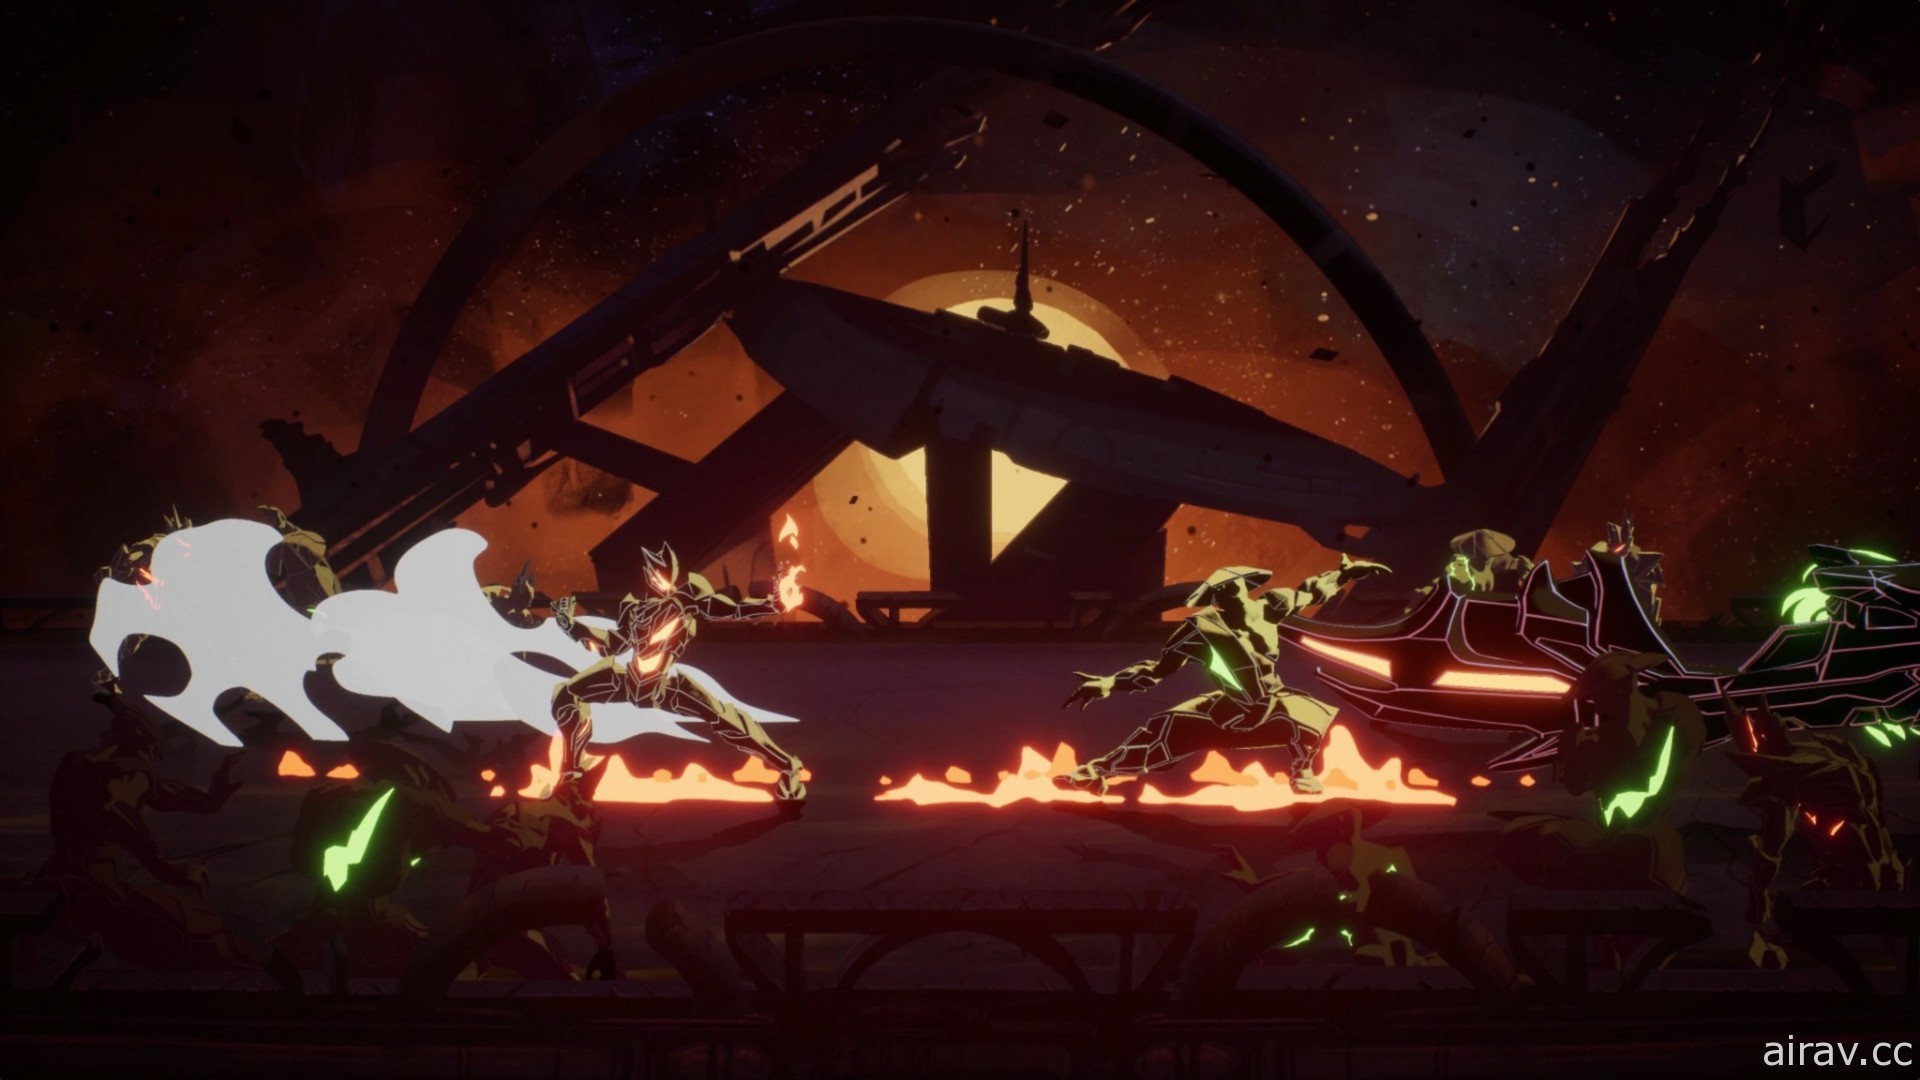 動畫風科幻動作遊戲《永世大帝必須死》正式發表 與寄生鎧甲共同面對各方勢力挑戰